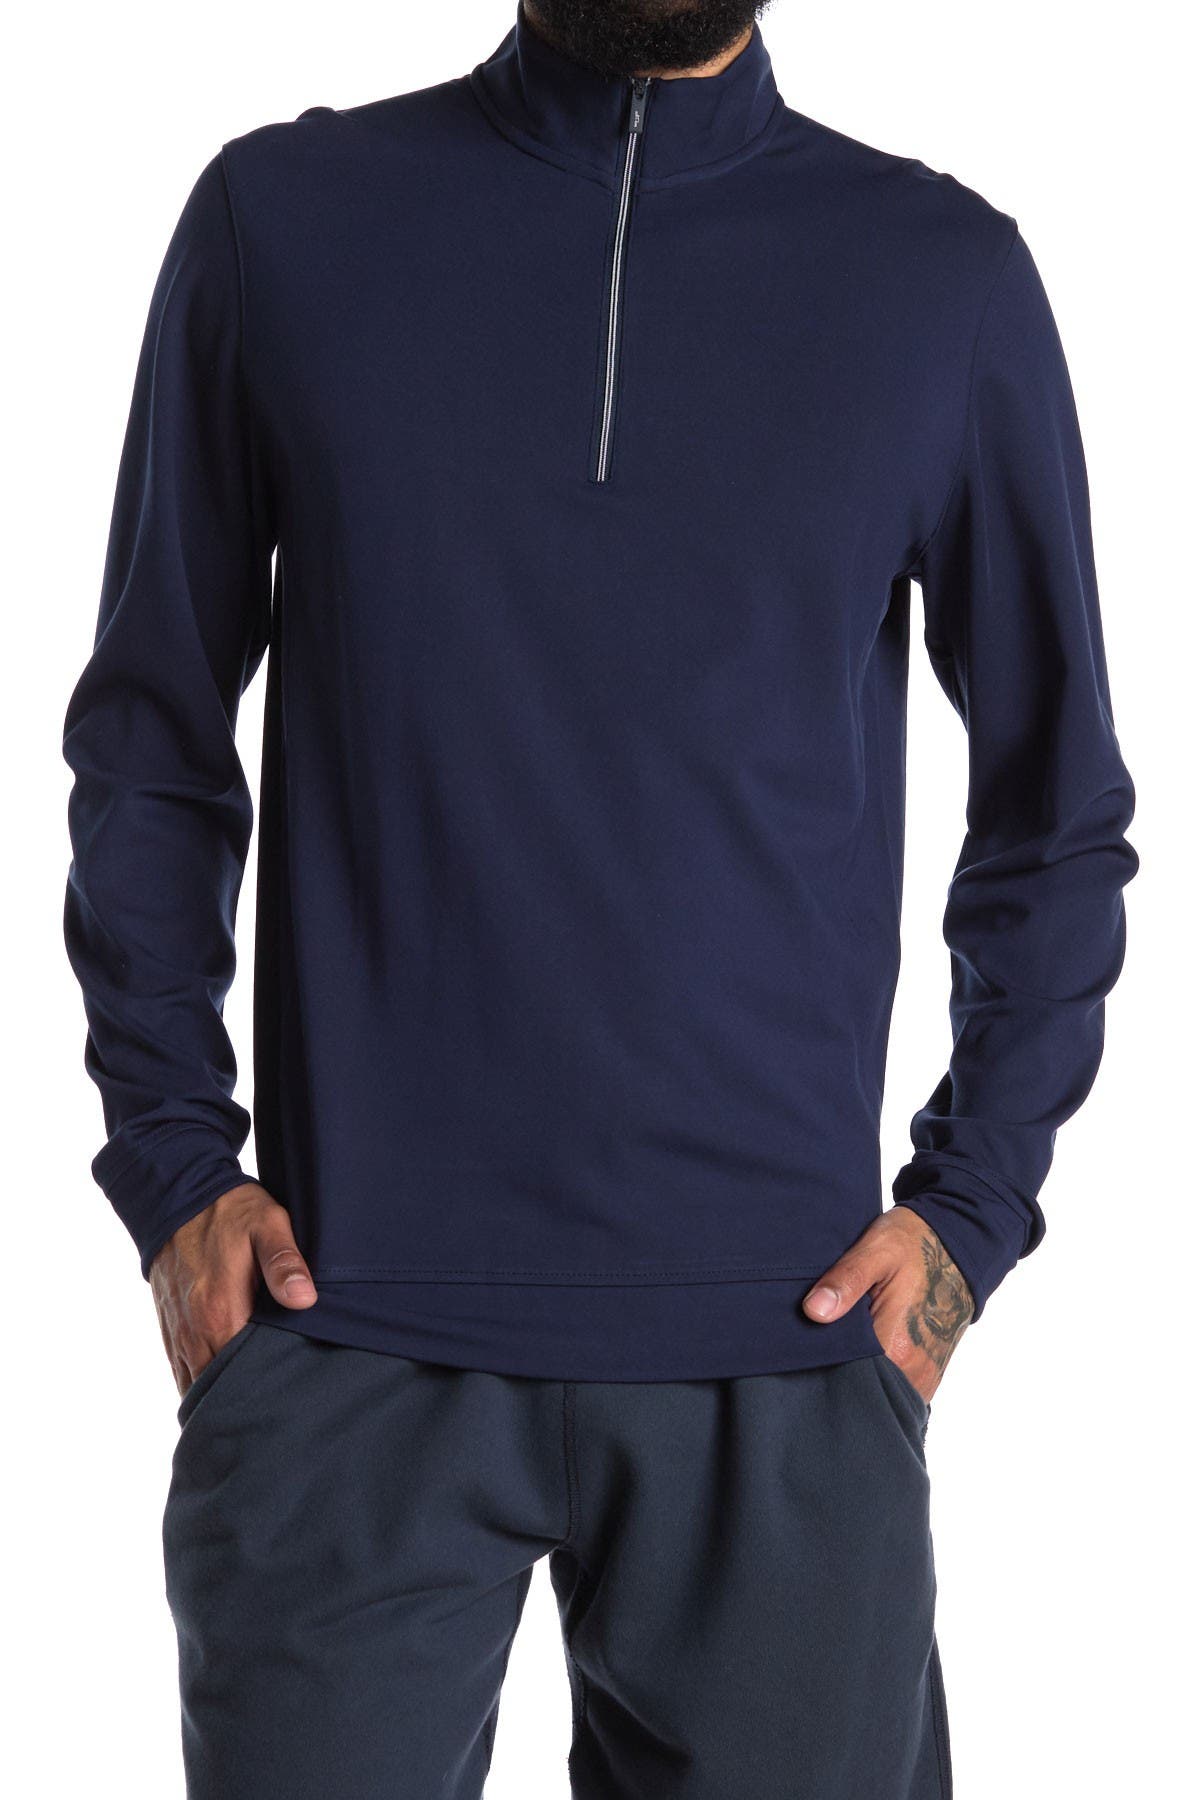 Adidas Golf Adipure Modern Tech 1/4 Zip Shirt In Navy5